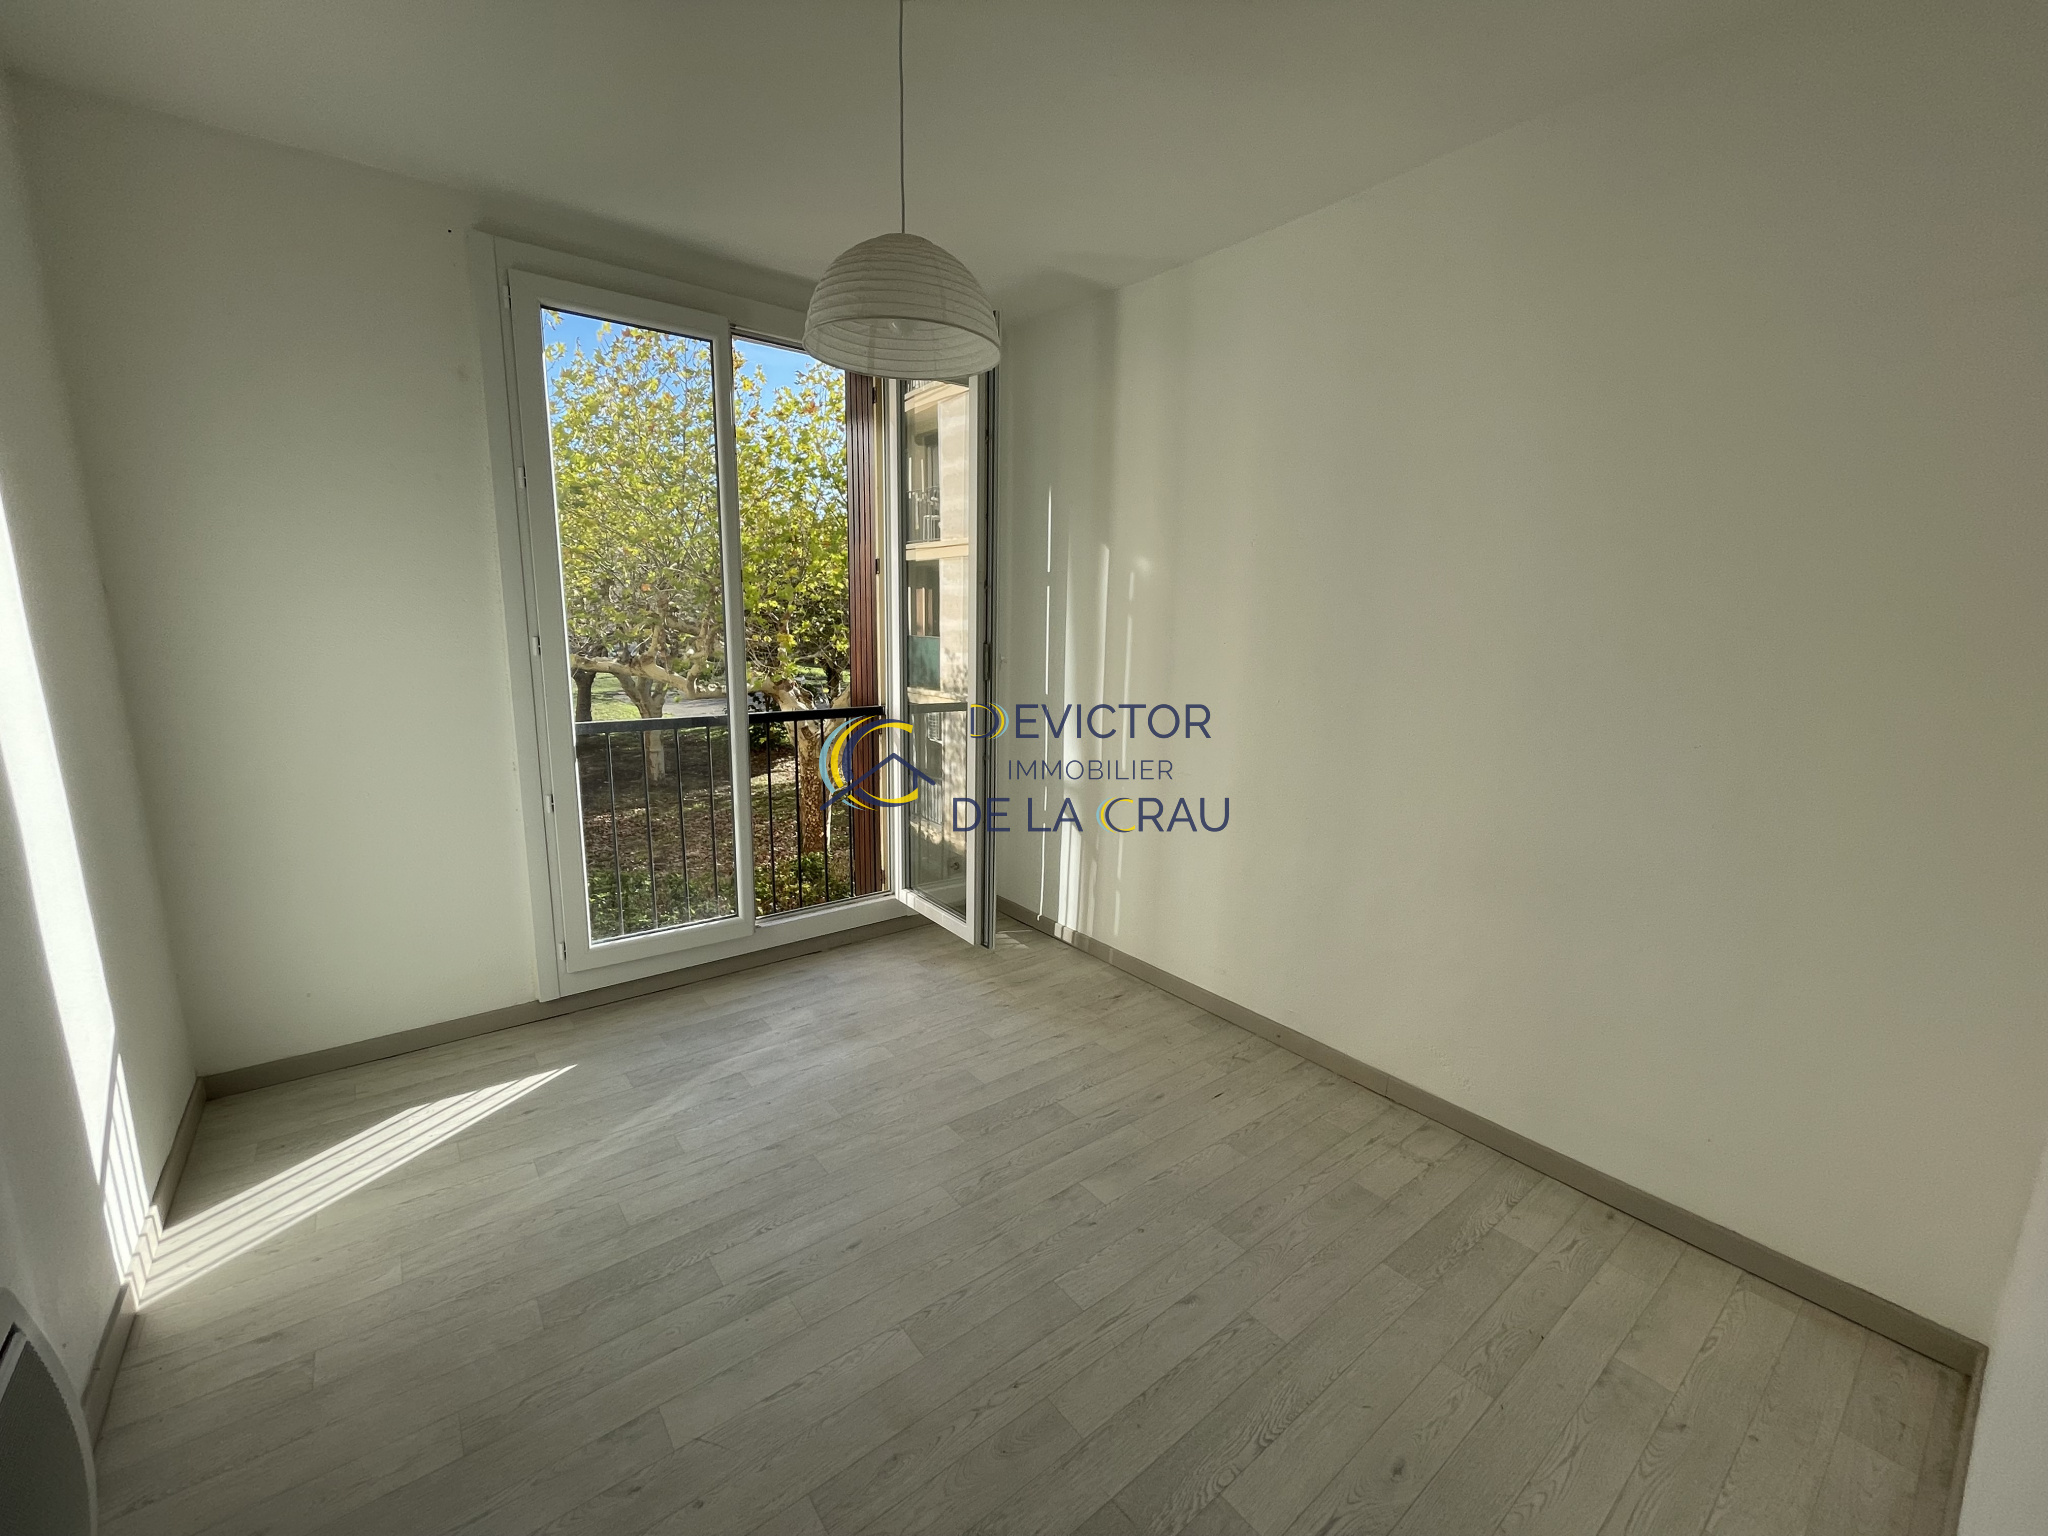 Vente Appartement 56m² 3 Pièces à Salon-de-Provence (13300) - Devictor Immobilier